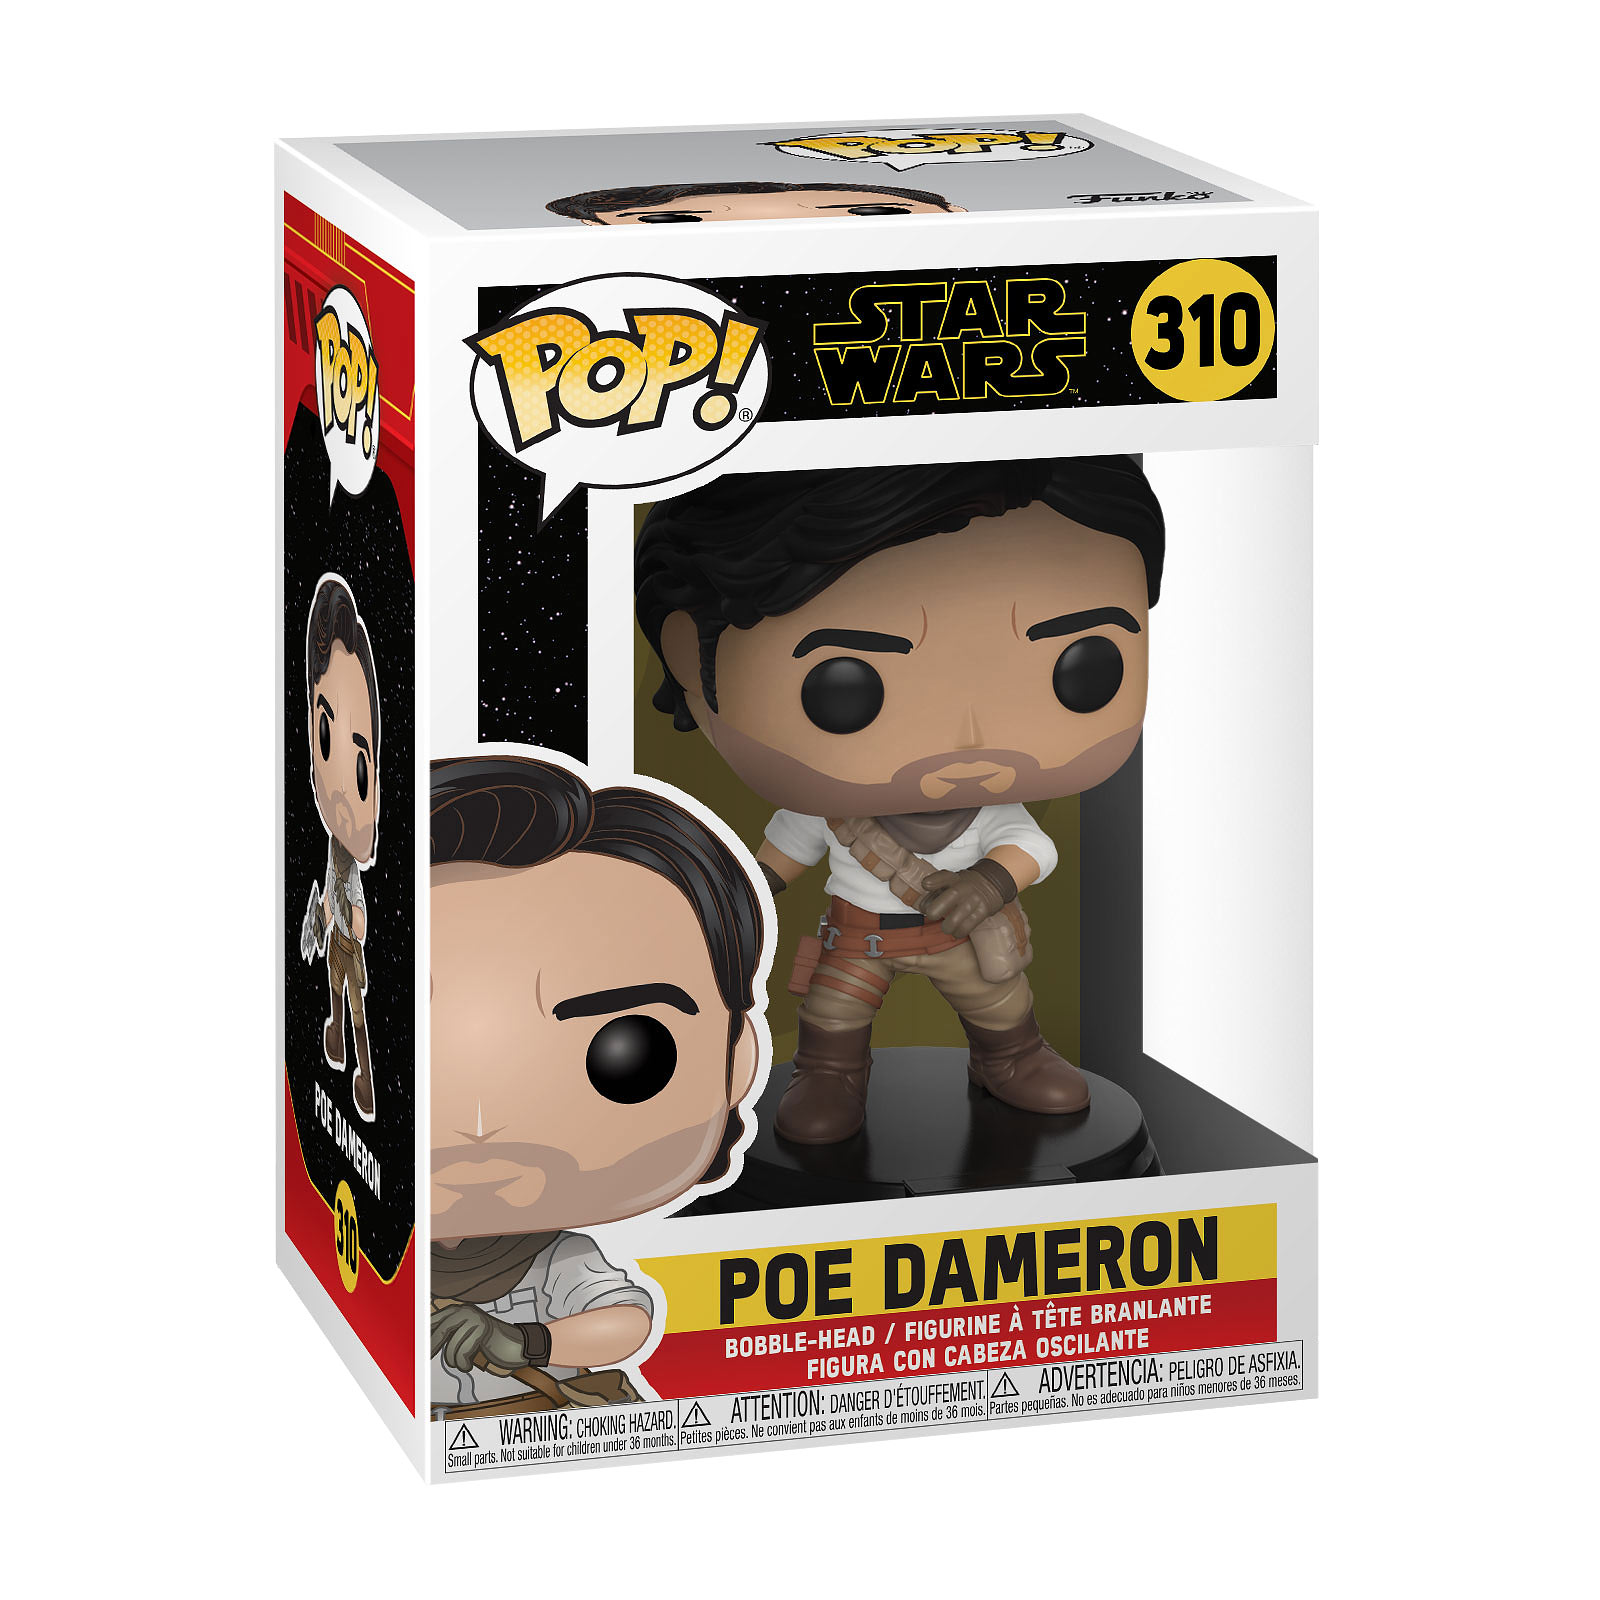 Star Wars - Poe Dameron Episode 9 Funko Pop Bobblehead Figure